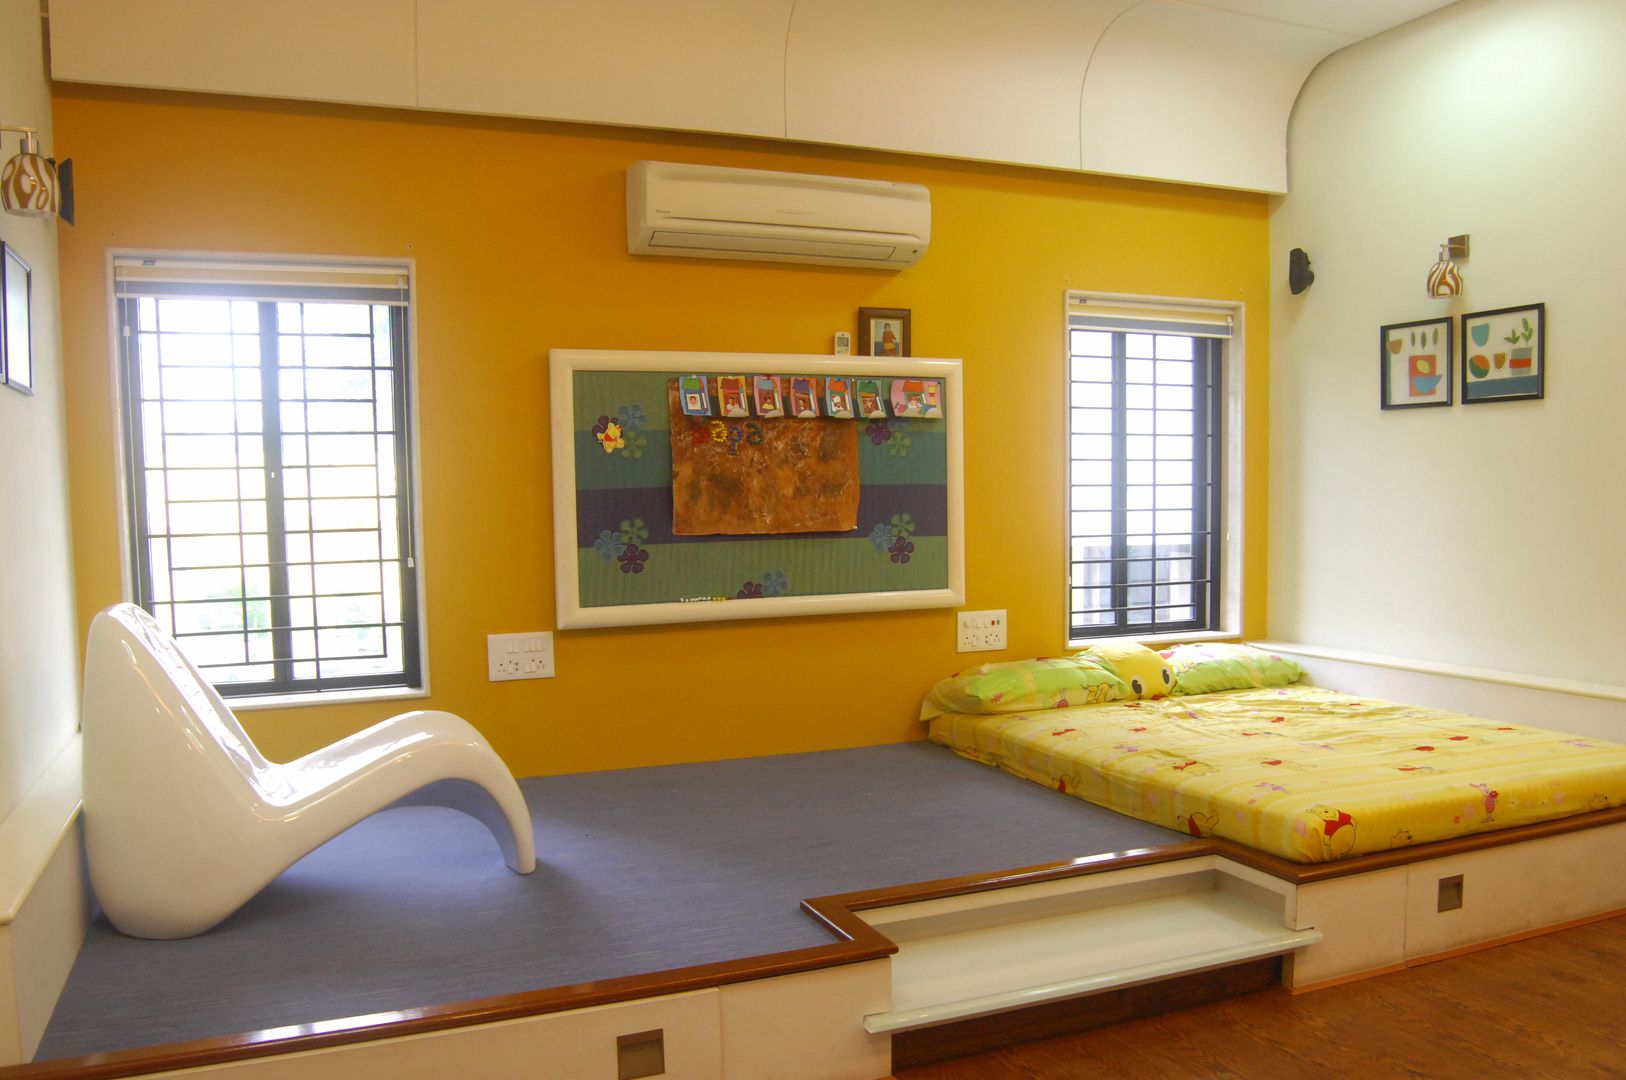 Chaitanya Vila, Image N Shape Image N Shape Детская комната в стиле модерн ДПК